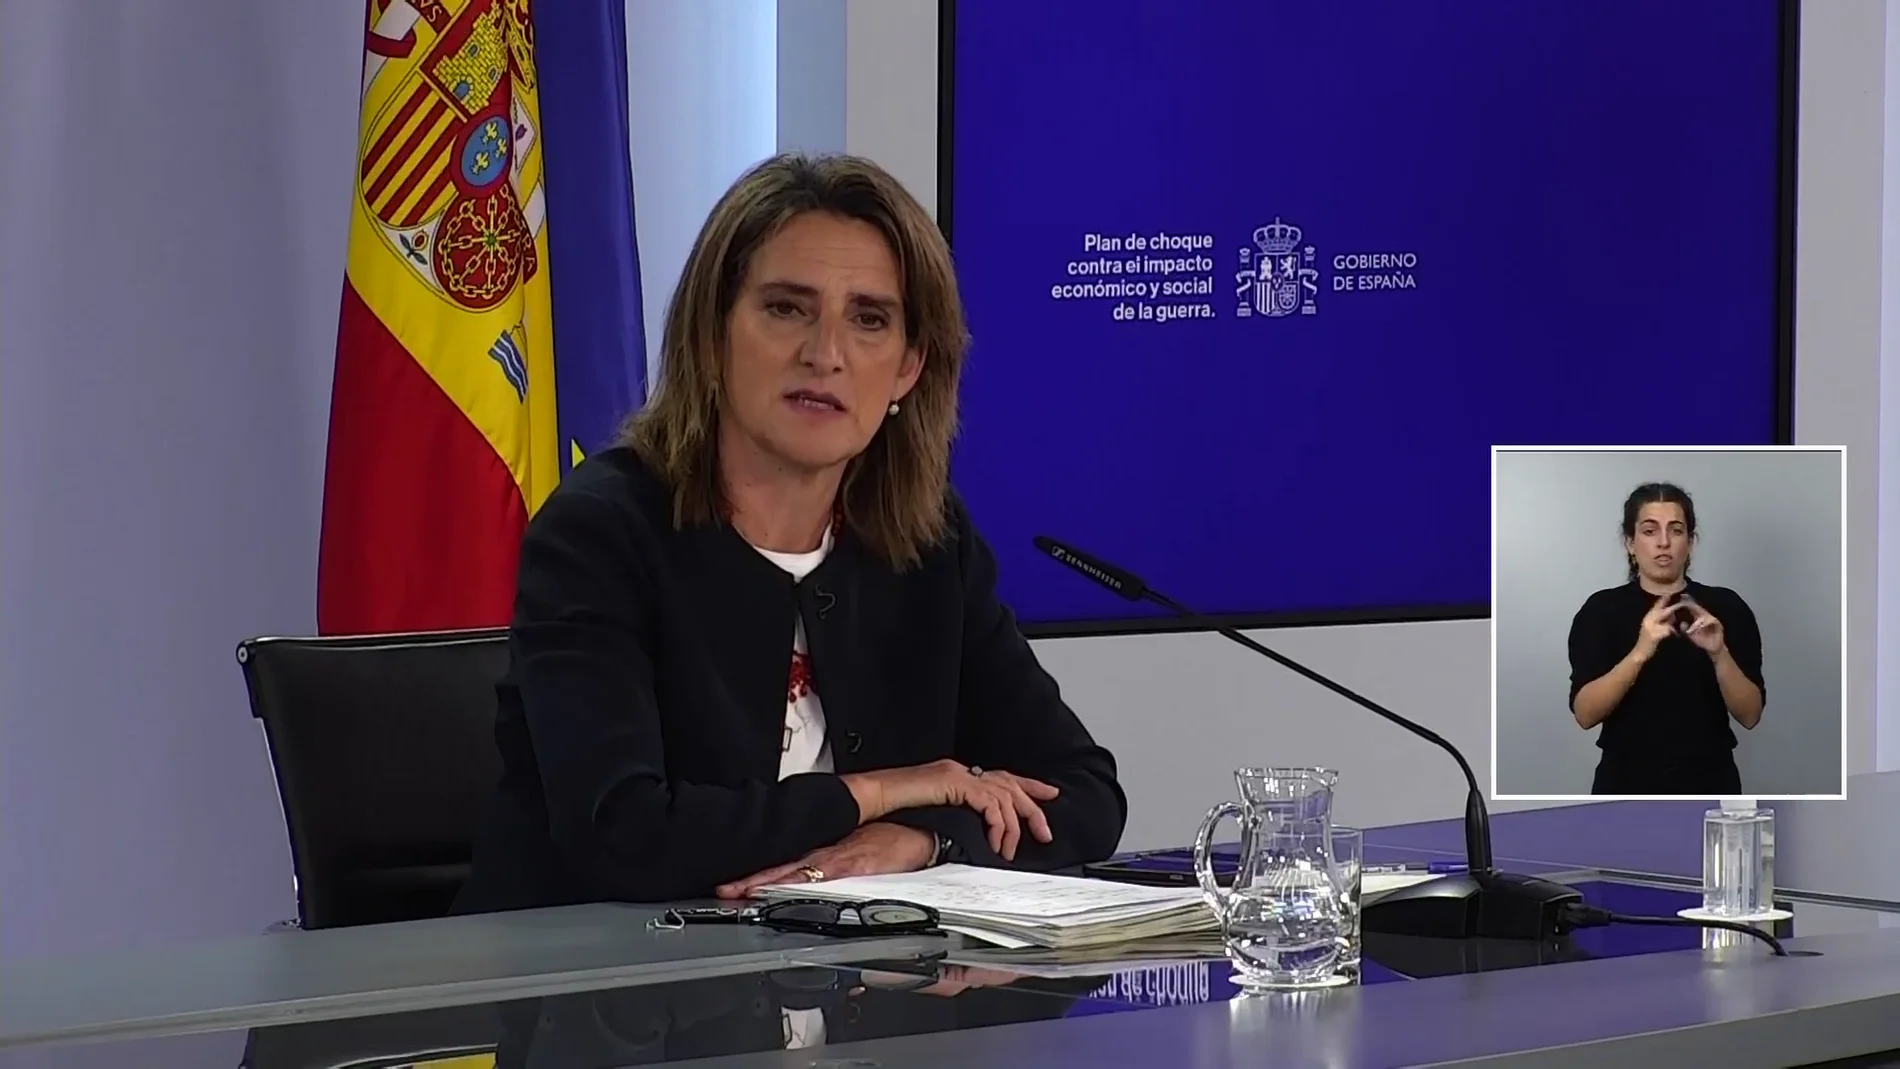 Teresa Ribera, tajante con el presidente de Iberdrola: "No creo que sea una práctica muy inteligente llamar tontos a sus clientes"